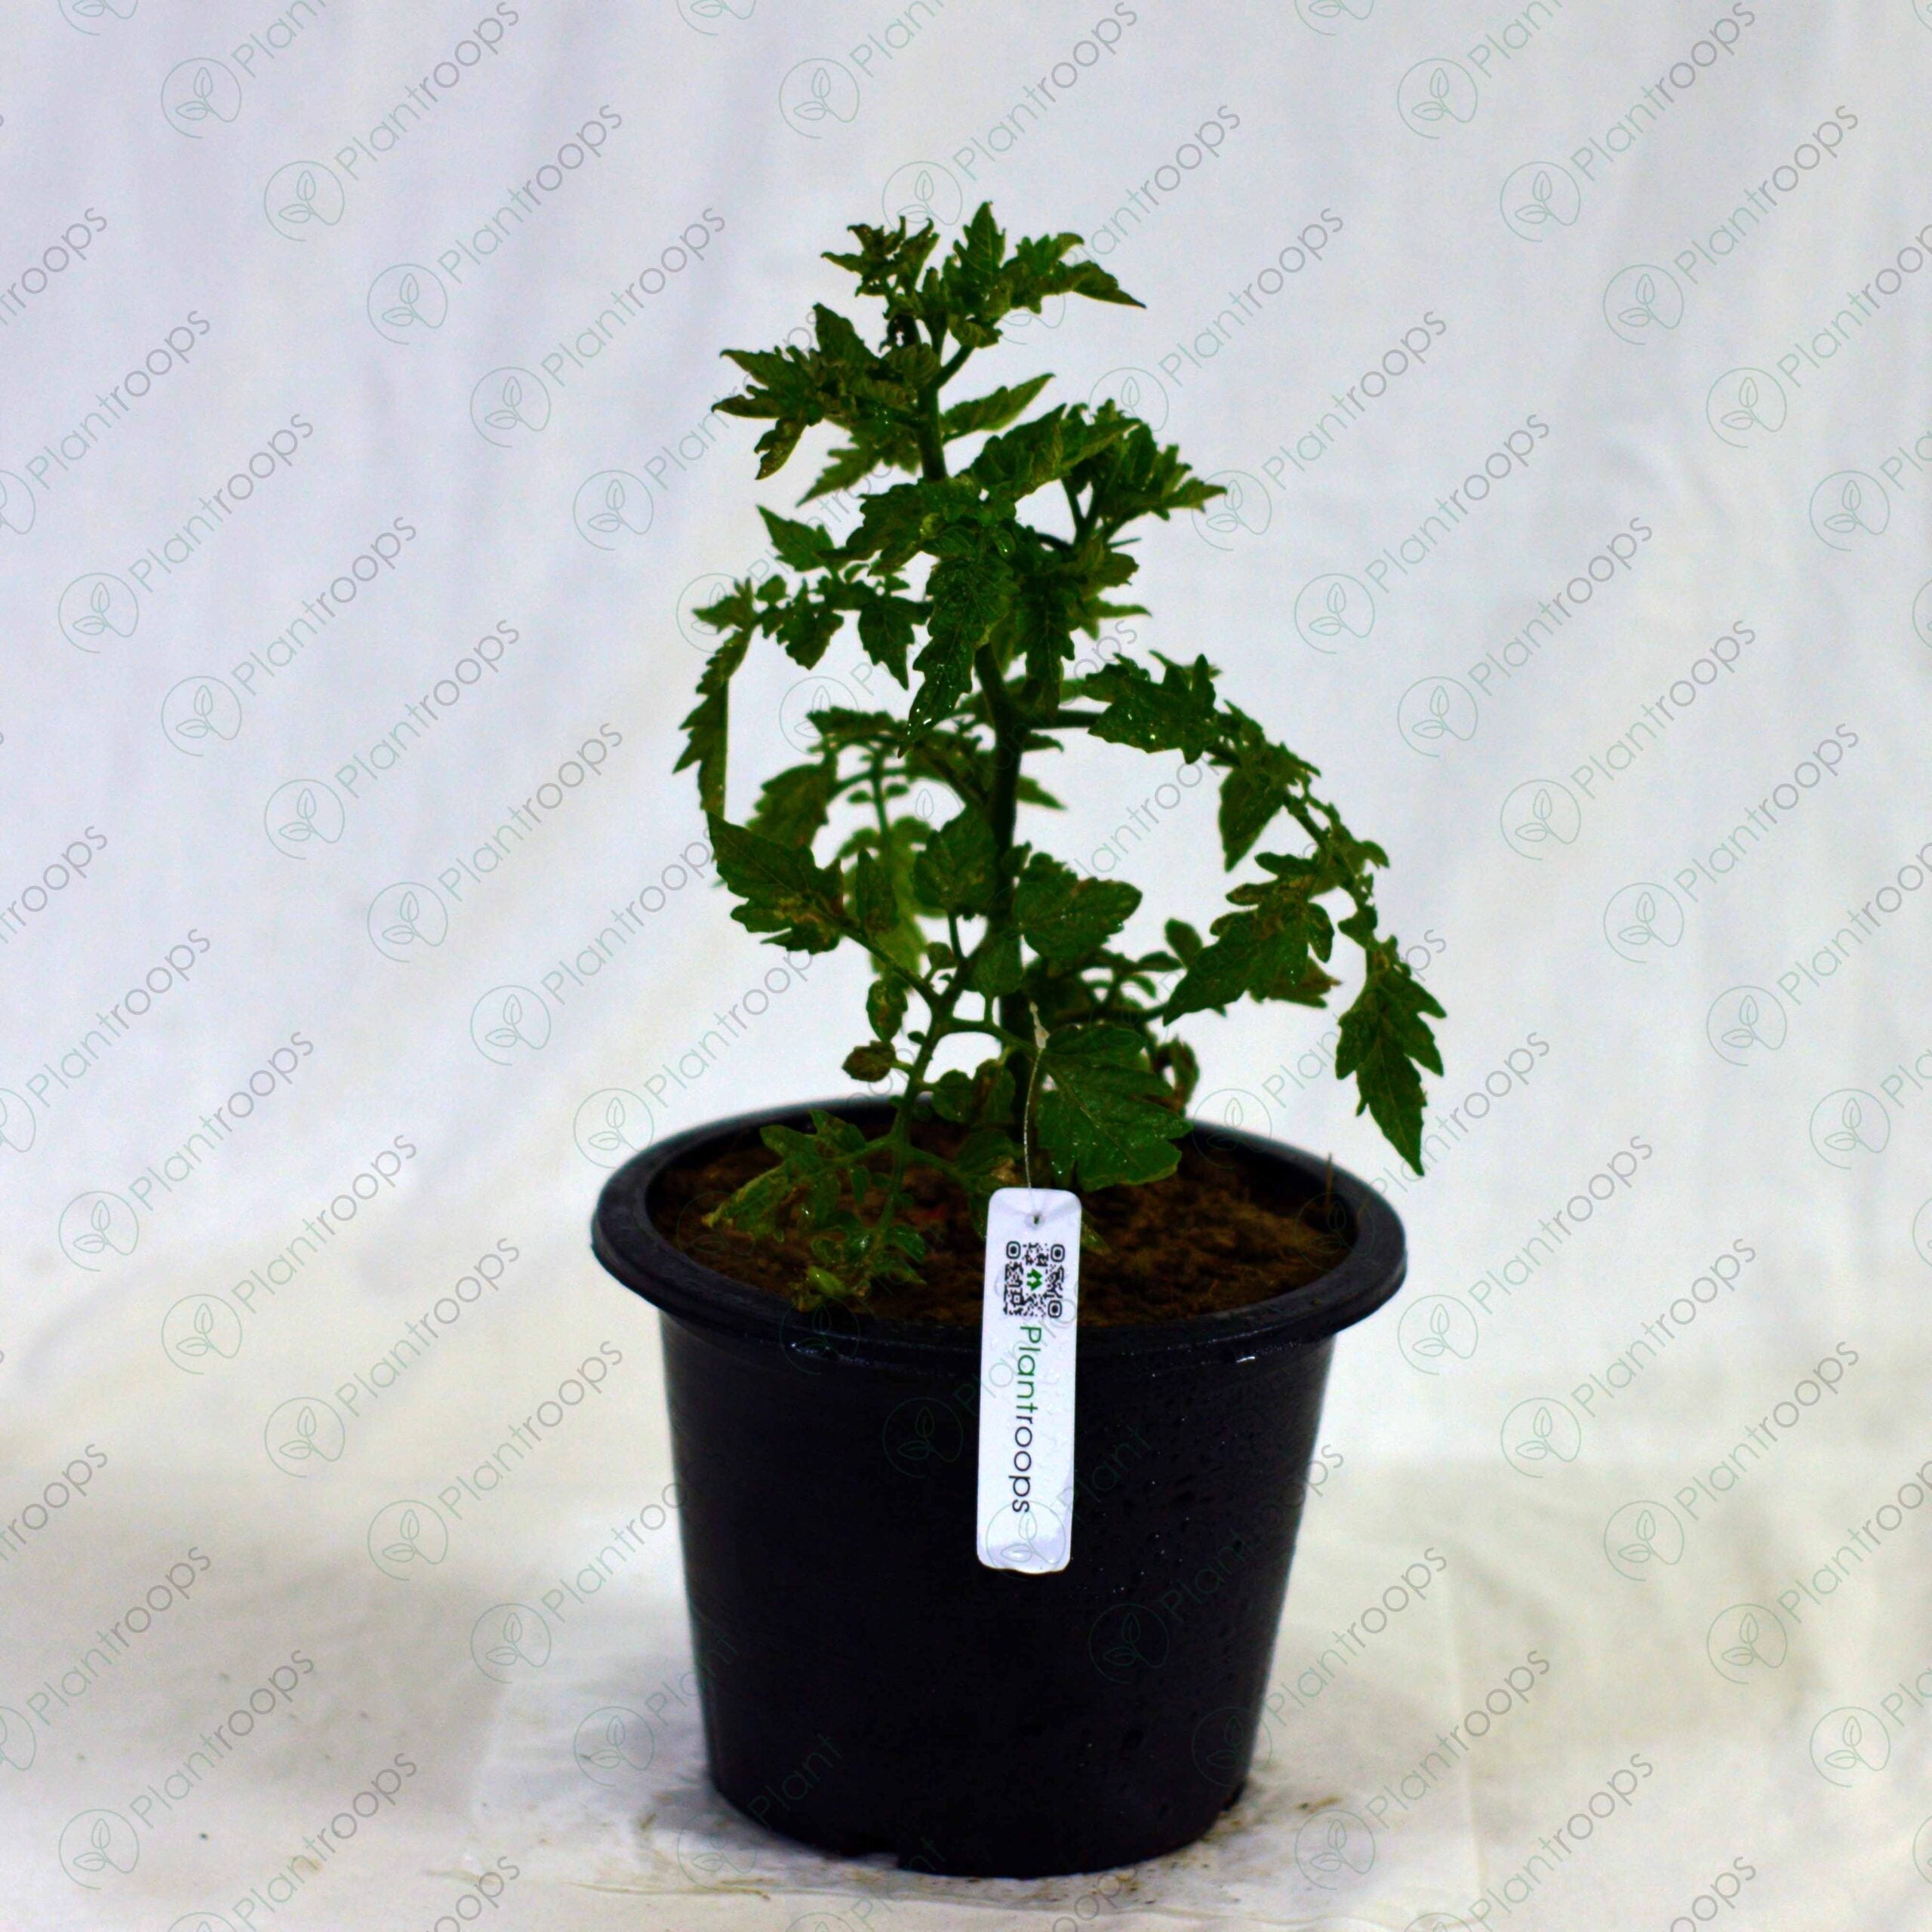 Hybrid Cherry Tomato Plant